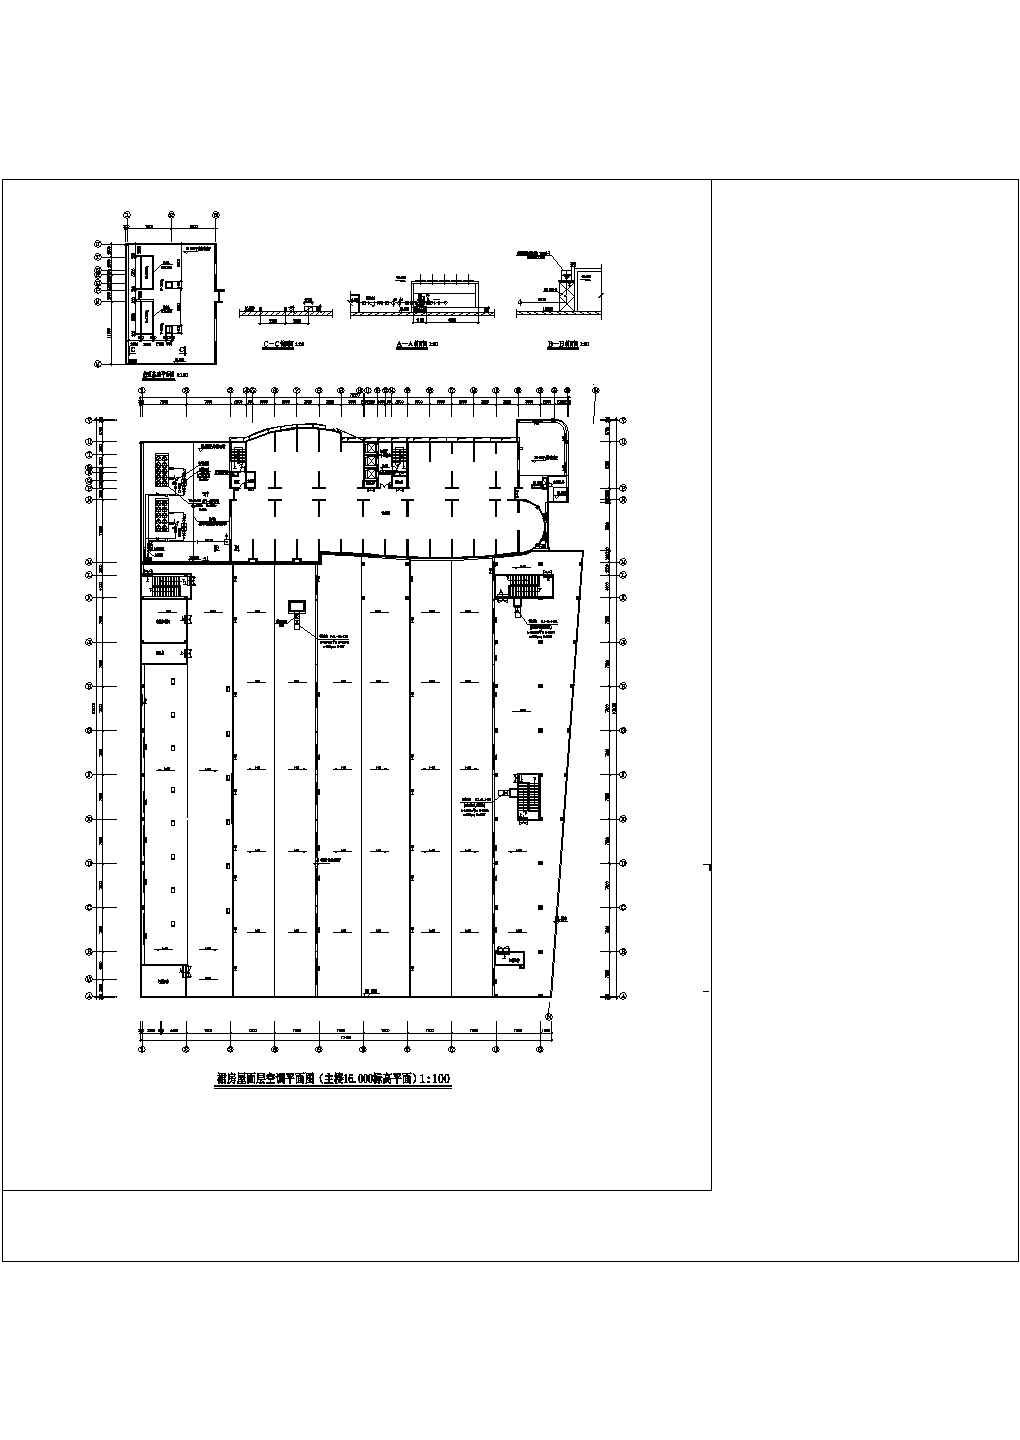 石家庄银座大厦商场整套空调方案设计cad施工图